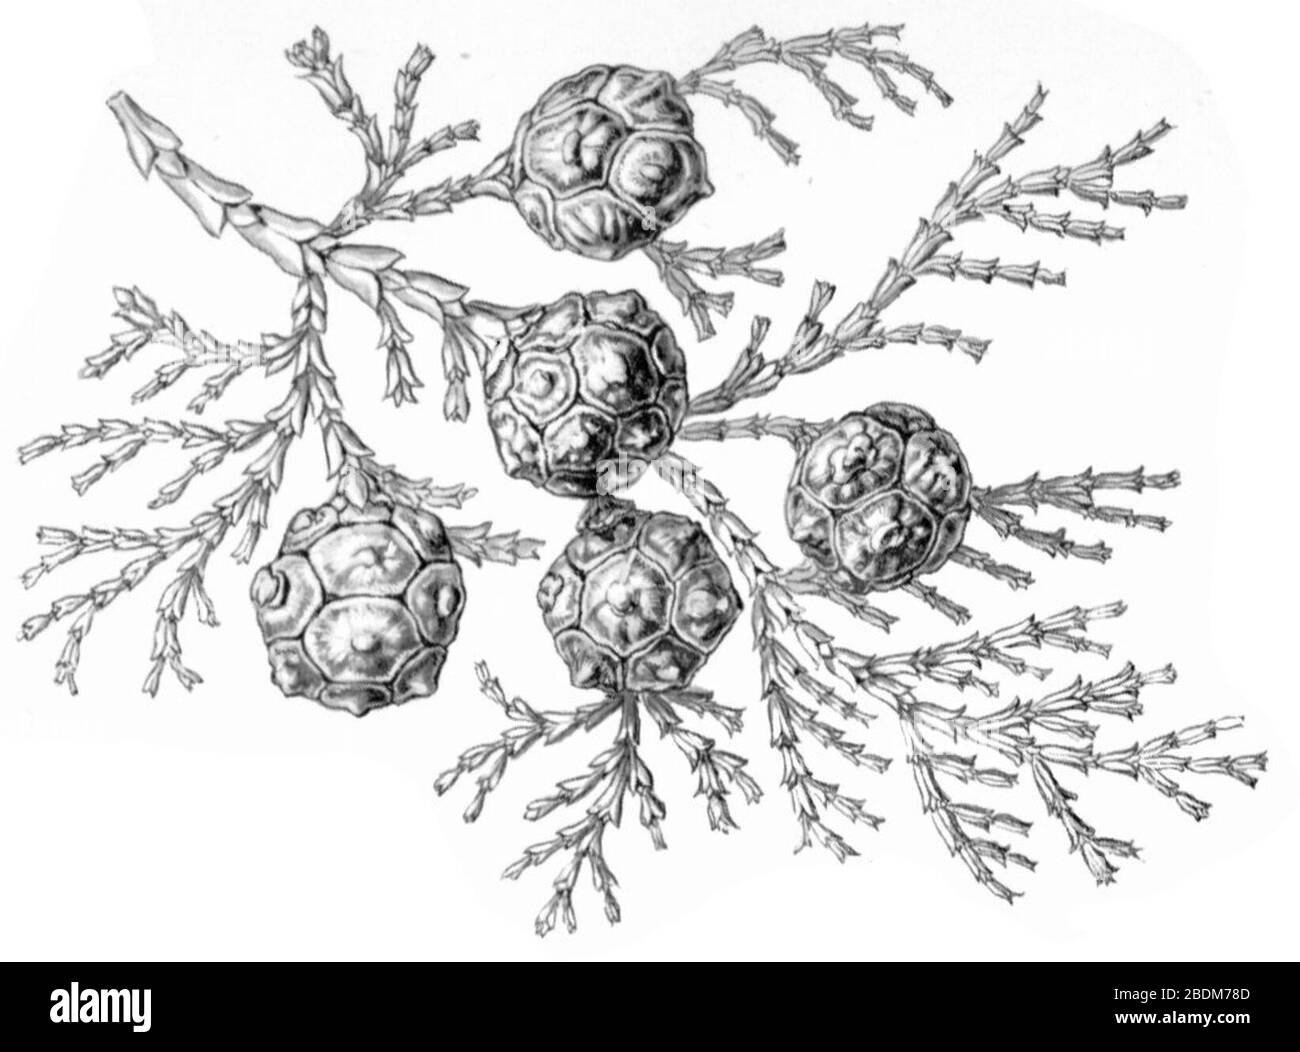 Haeckel Coniferae Chamaecyparis obtusa. Stock Photo